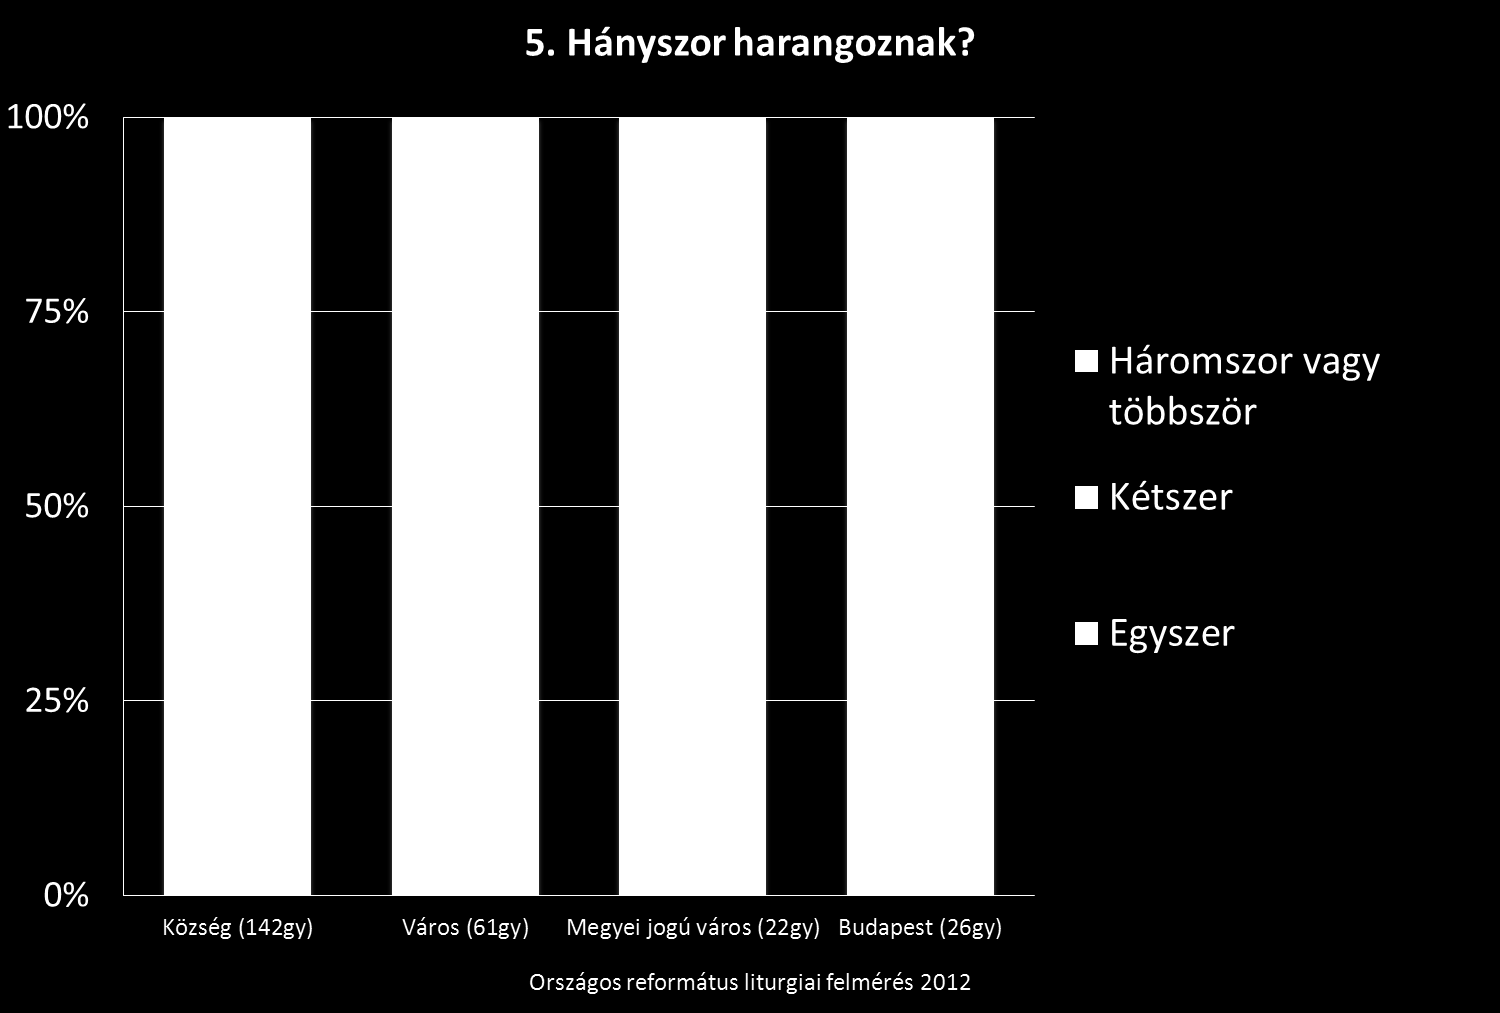 Ugyanennek a jelenségnek egy másik mutatója az, hogy a községek 70%-ában háromszor harangoznak régi szokás szerint, míg Budapesten ugyanez az arány csak 39%.